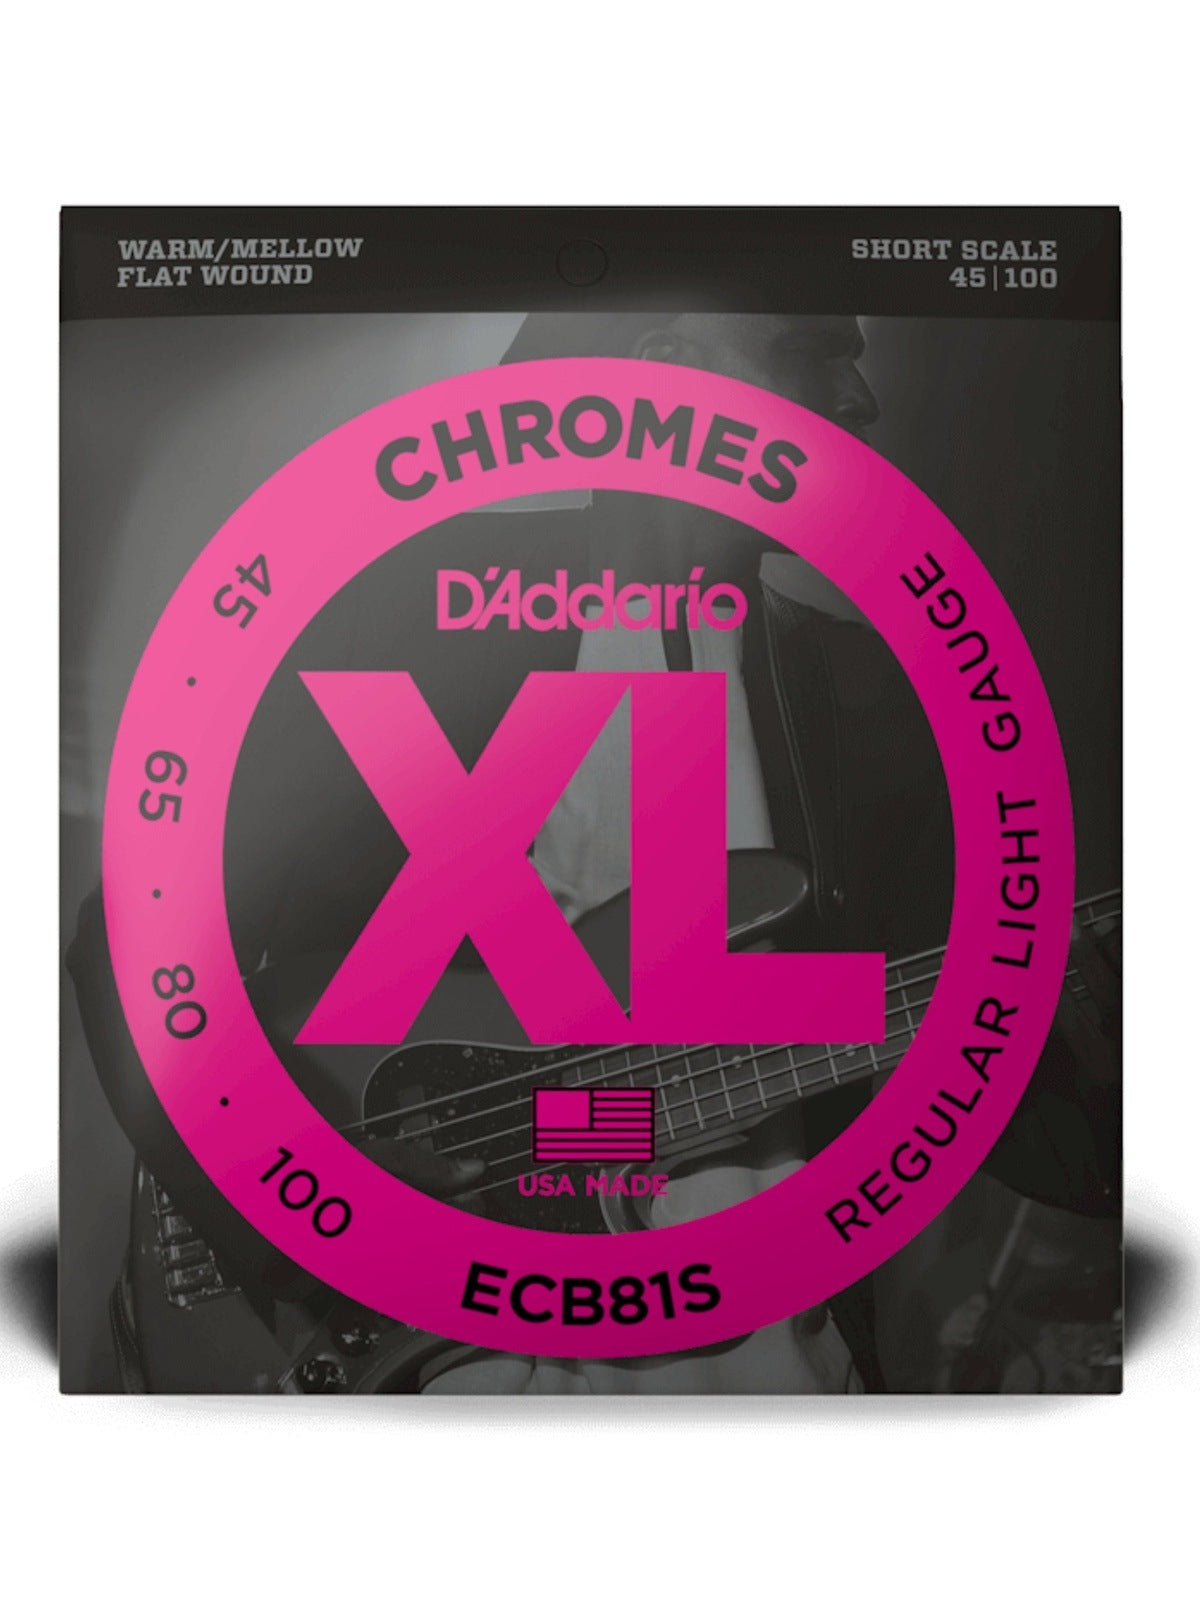 D'Addario XL Chromes Short Scale Bass Strings